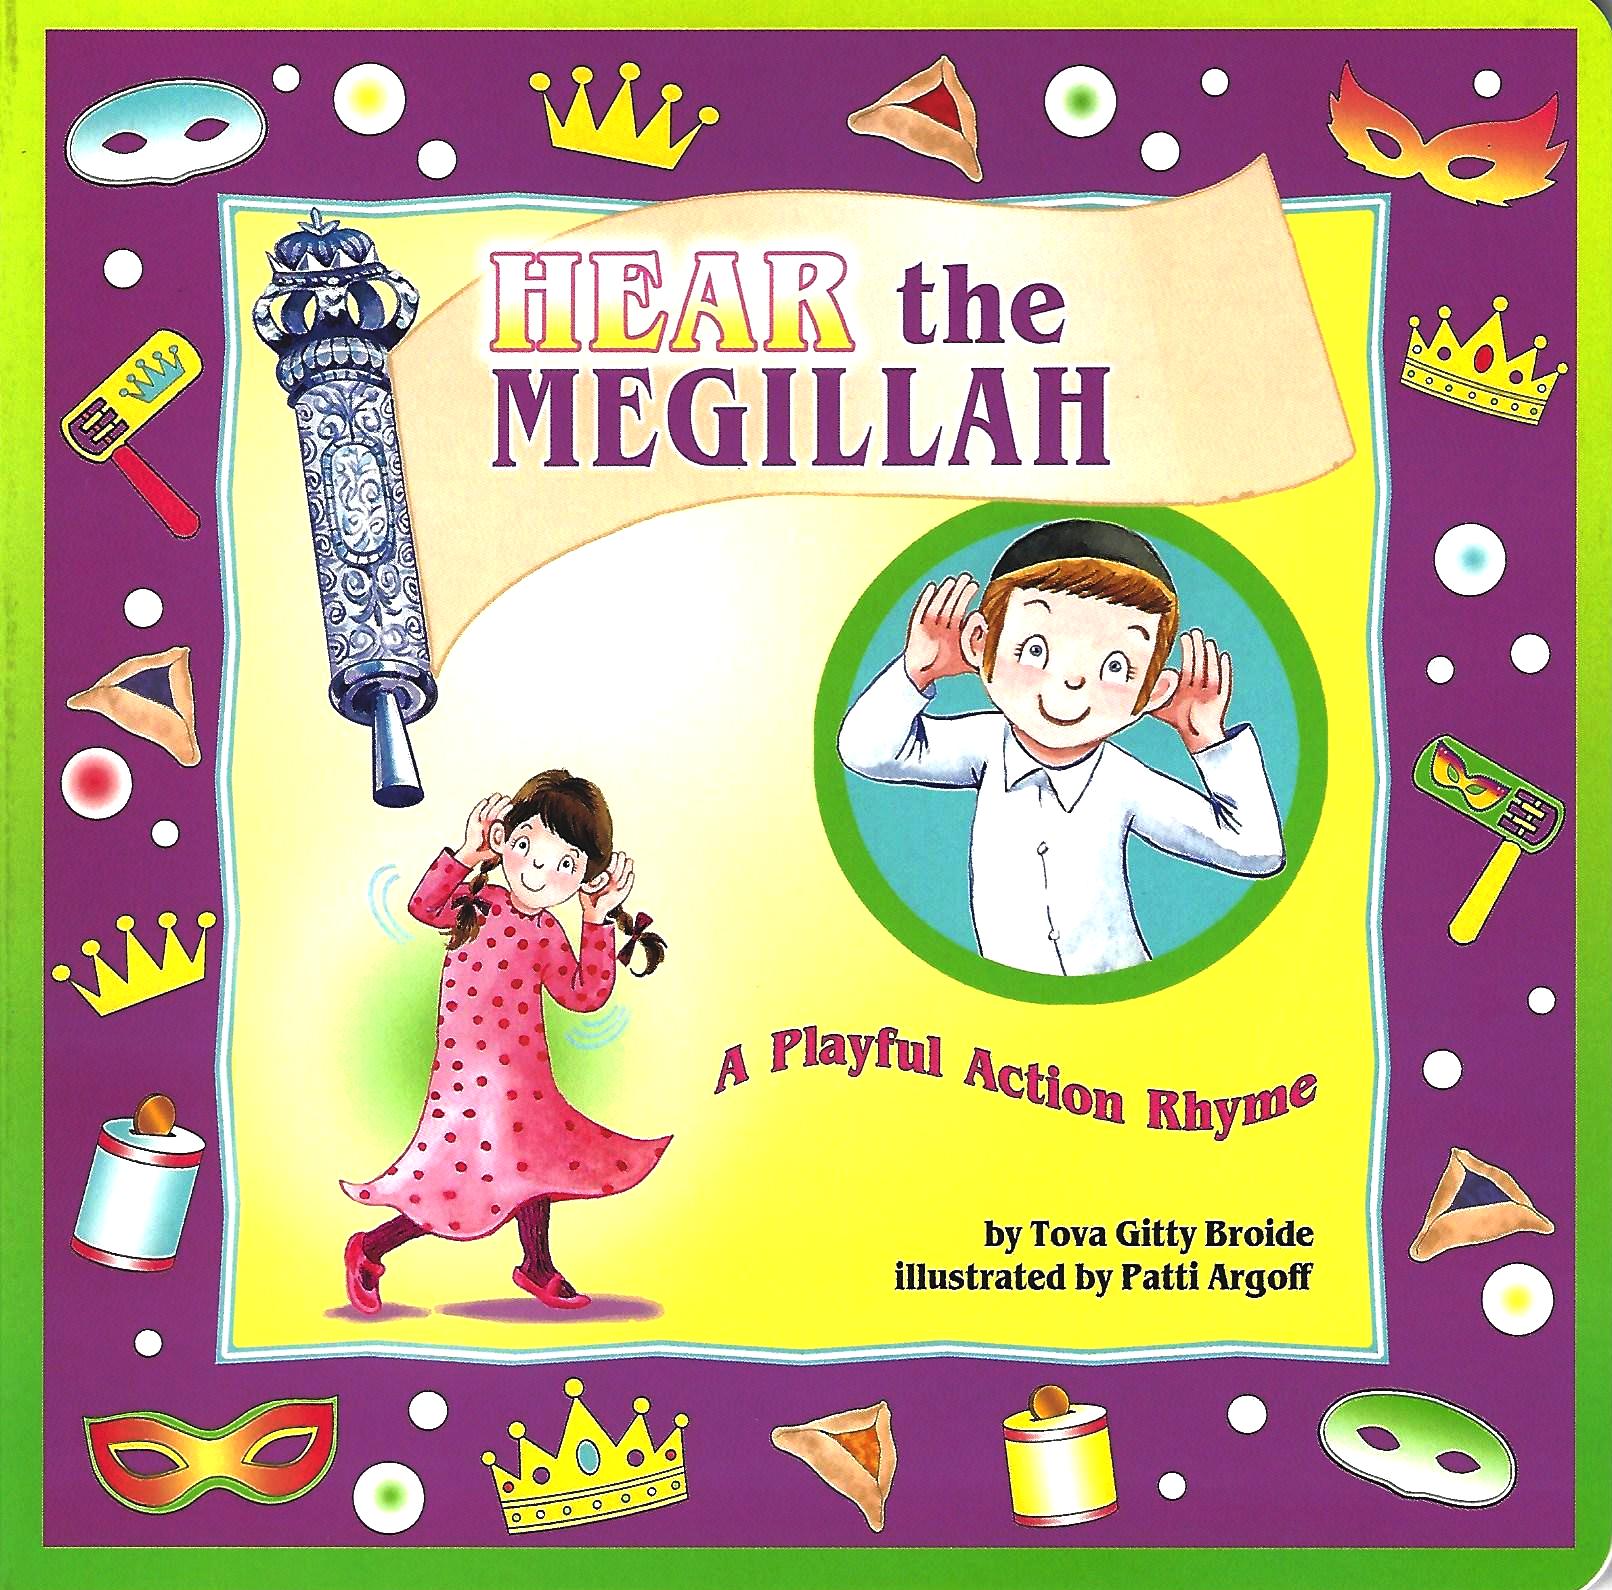 Hear the Megillah – A Playful Action Rhyme